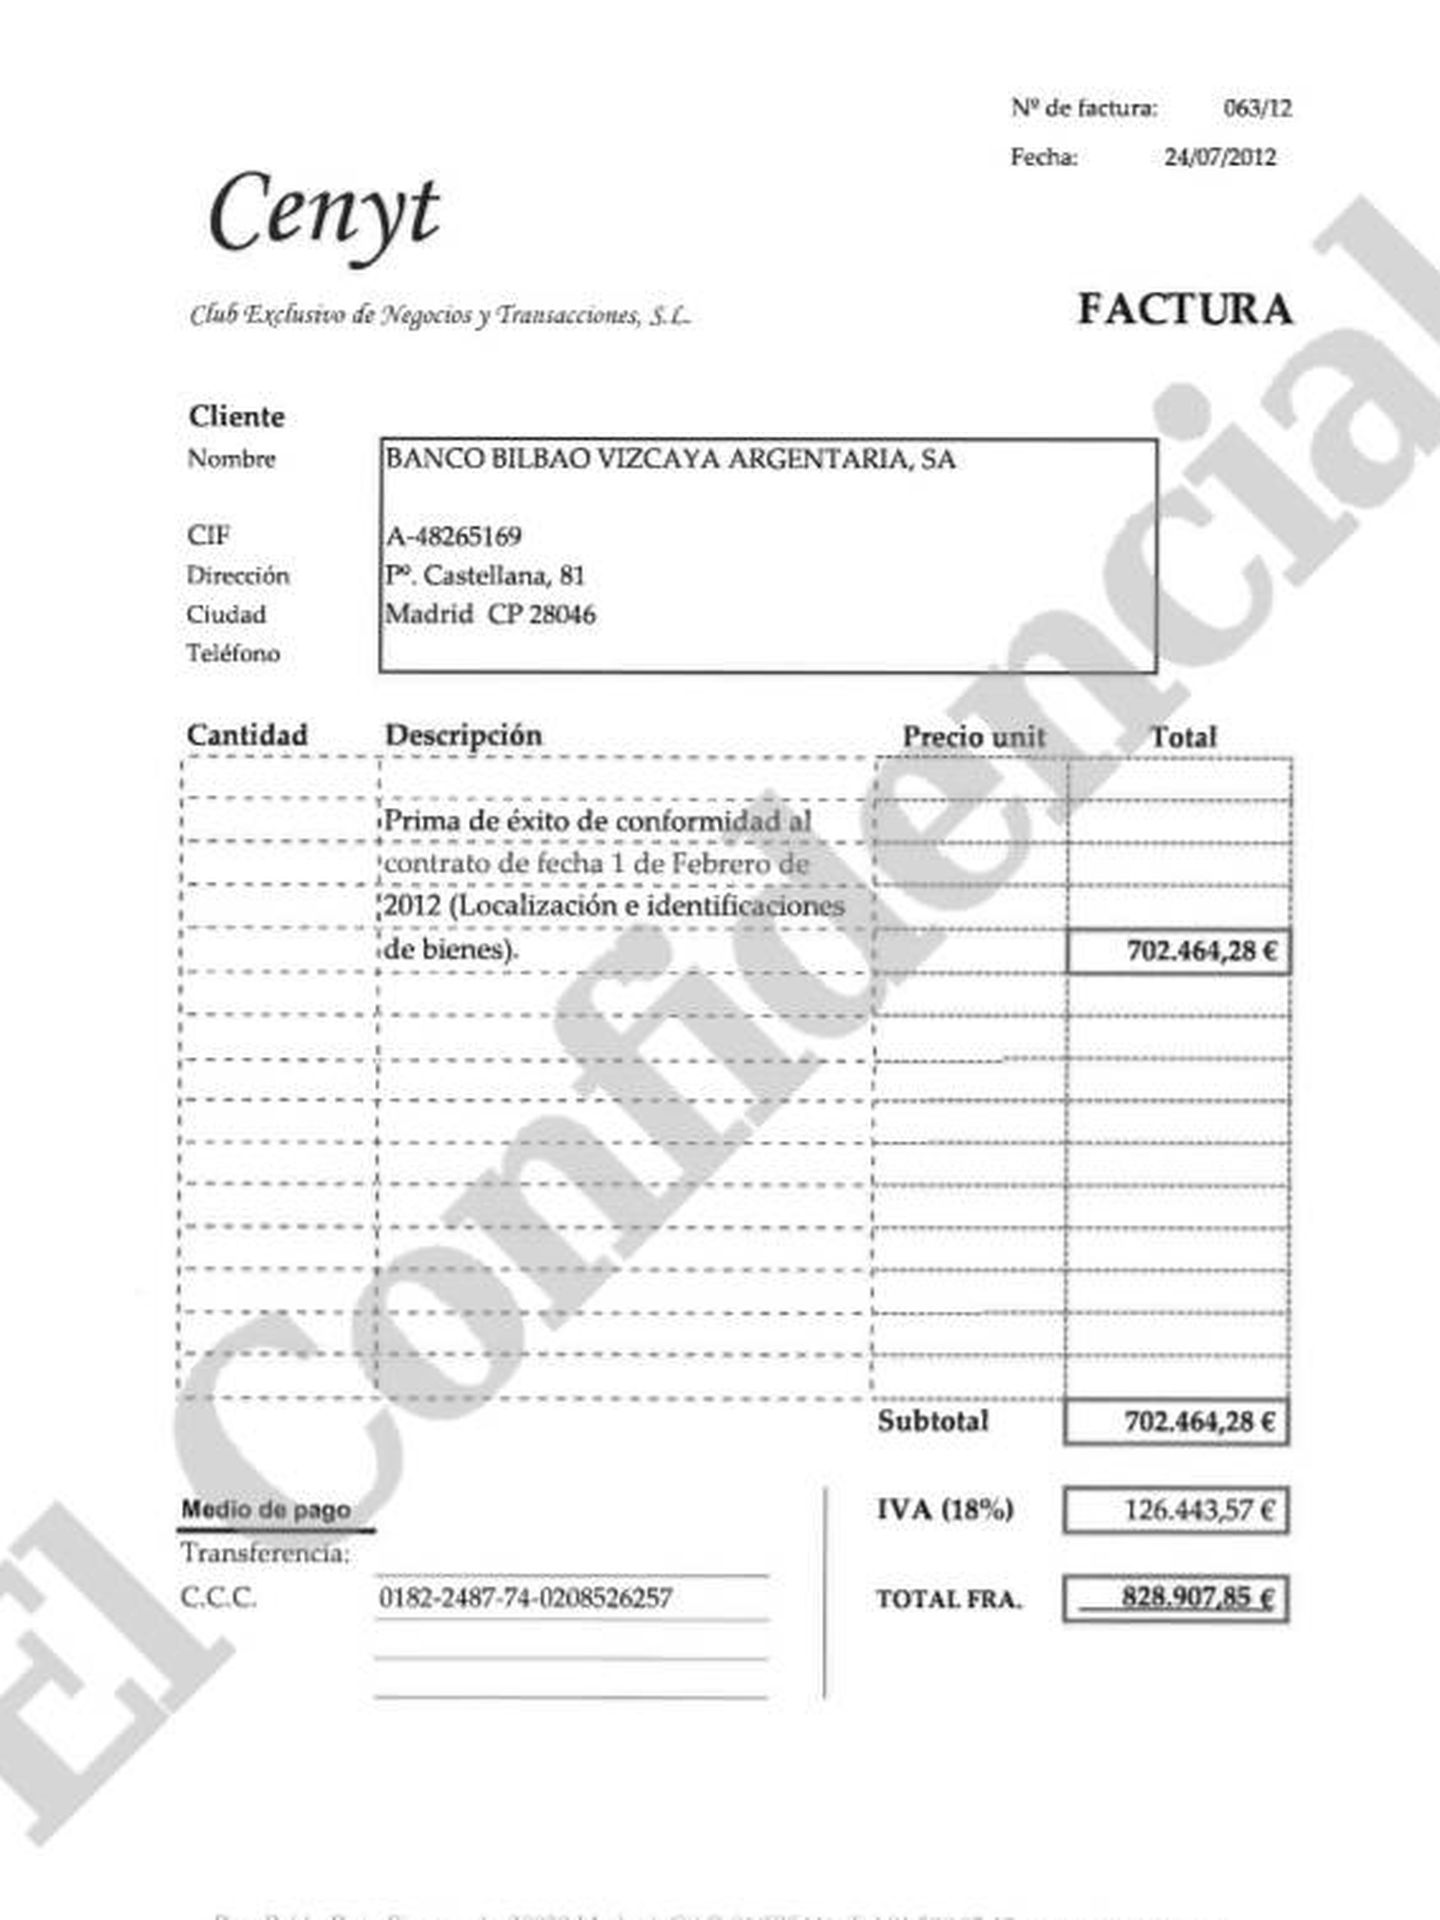 Haga clic aquí para ver el documento que acredita la facturación de 828.907 euros.